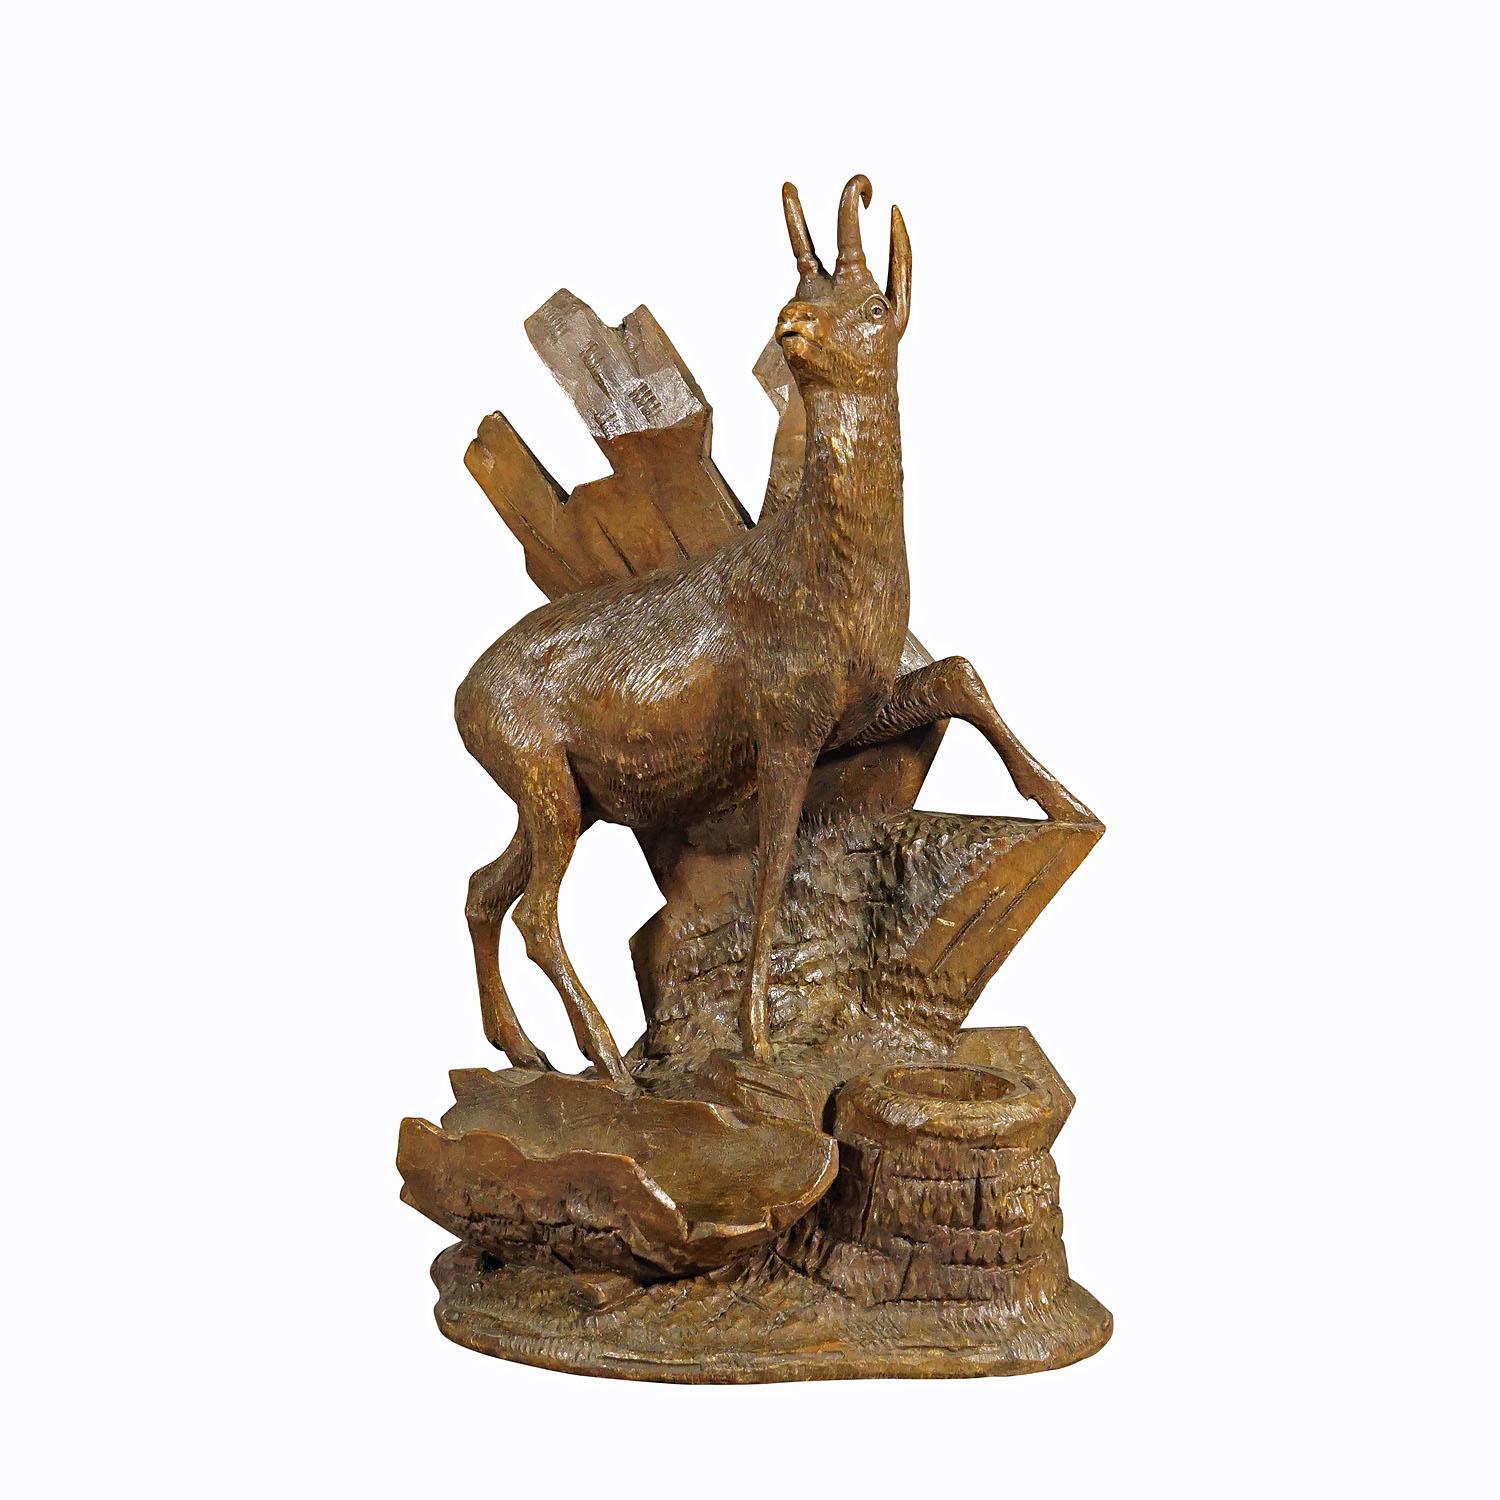 Chamois en bois finement sculpté Brienz, Suisse vers 1900.

Sculpture en bois délicatement sculptée à la main représentant un chamois debout sur un socle rocheux. Une sculpture très détaillée et naturelle exécutée par l'un des sculpteurs sur bois